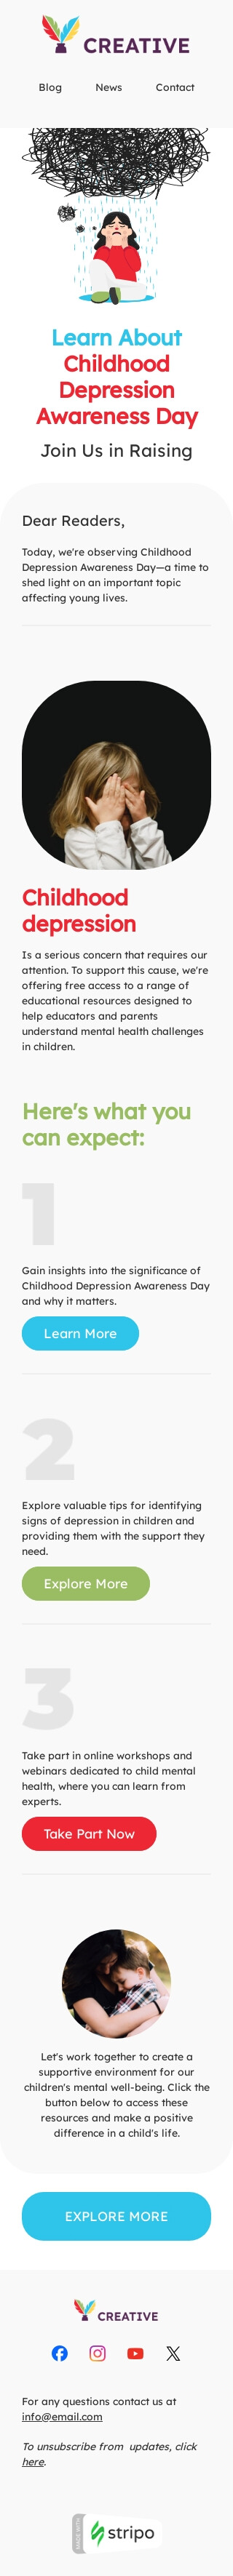 Plantilla de correo electrónico «Depresión infantil» de Día de concientización sobre la depresión infantil para la industria de publicaciones y blogs Vista de móvil